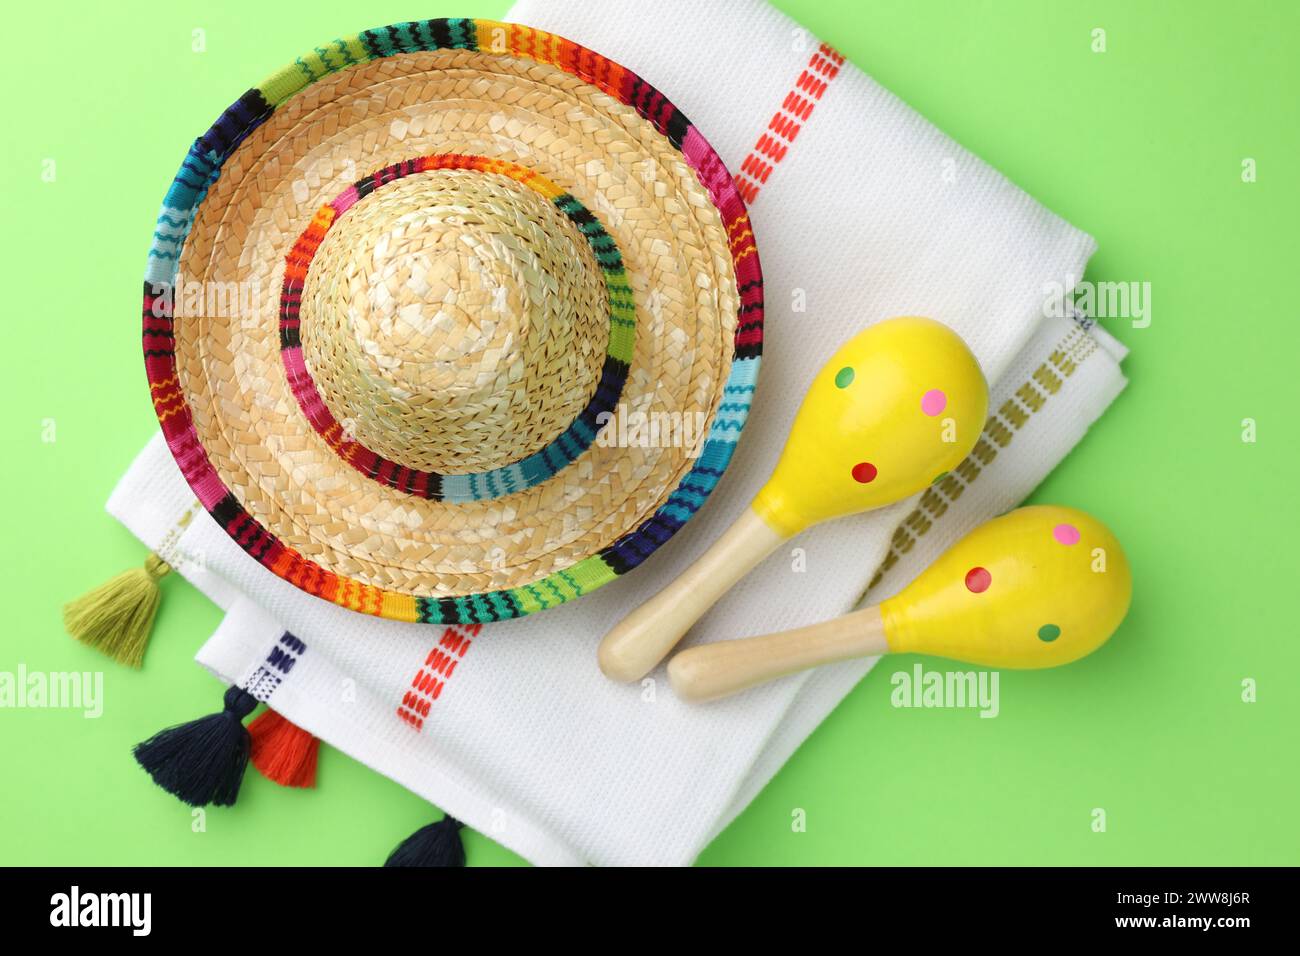 Chapeau sombrero mexicain, maracas et poncho sur fond vert, plat Banque D'Images